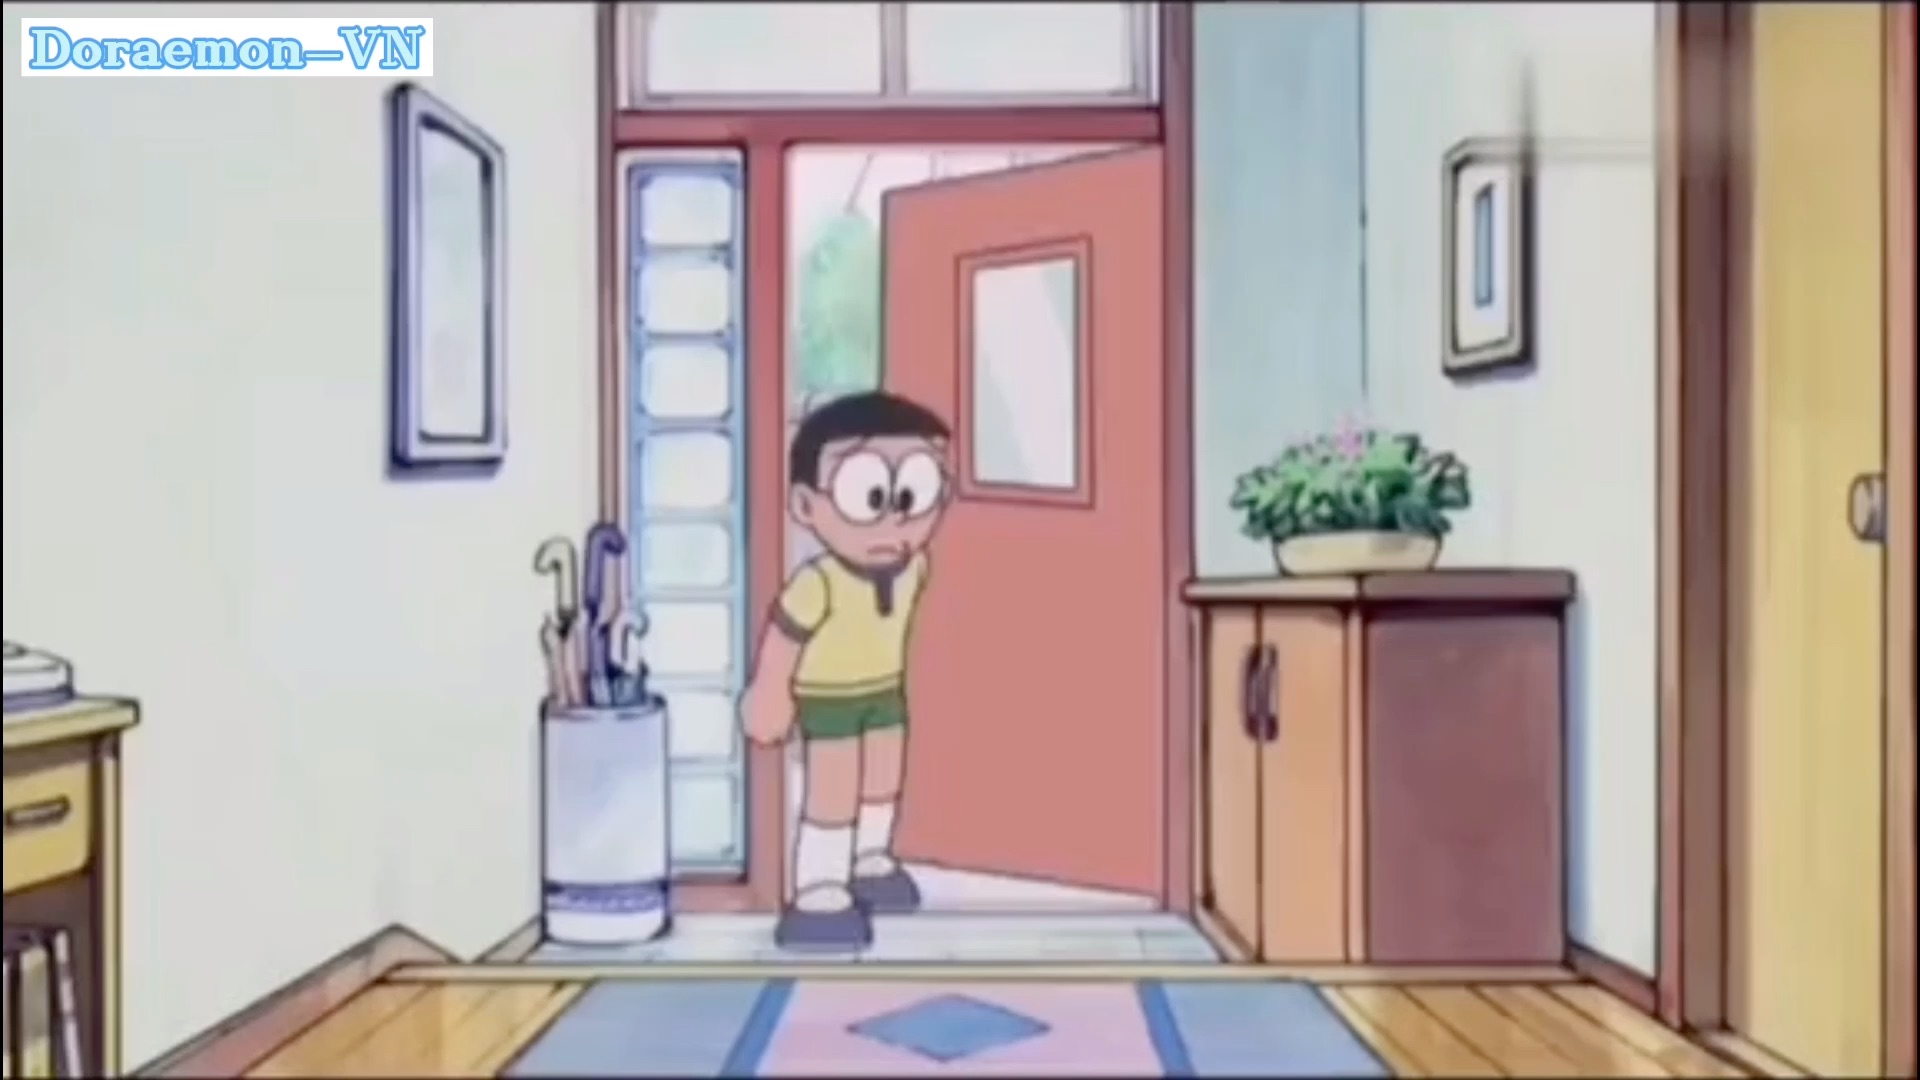 CHÚC MỪNG SINH NHẬT NOBITA     Nhà của Doraemon  Facebook